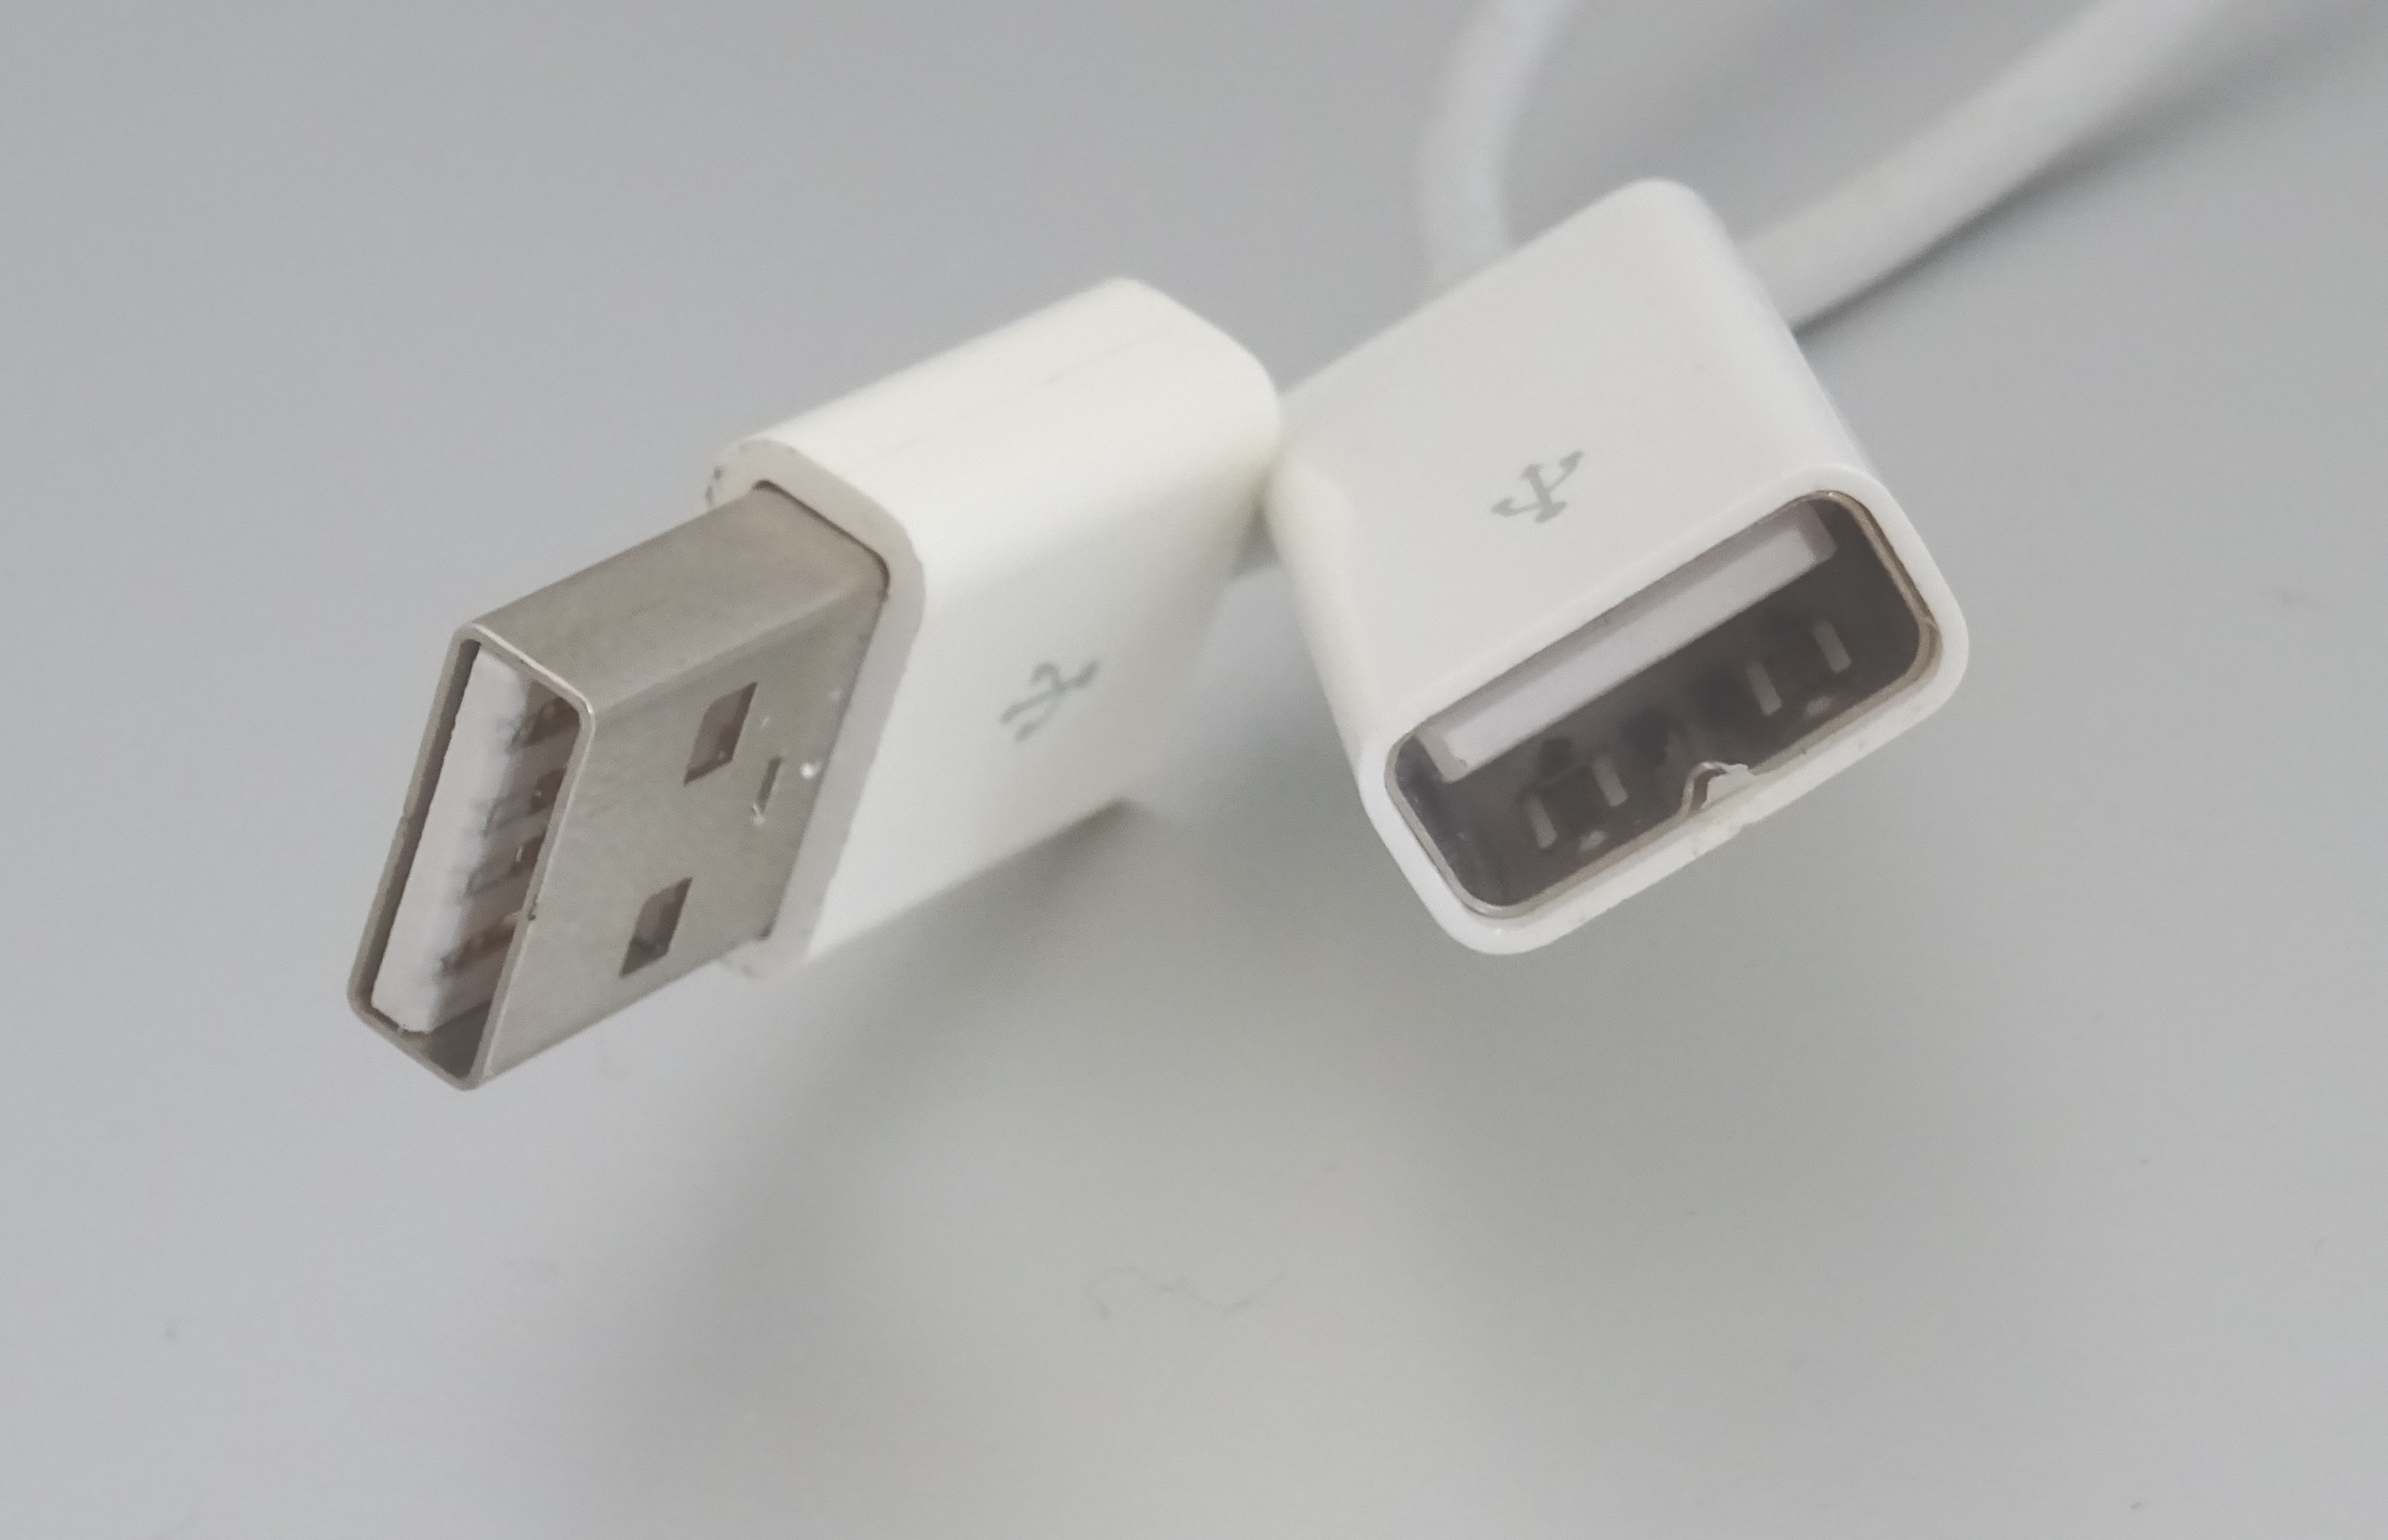 Les rallonges USB propriétaires des claviers Apple – Le journal du lapin